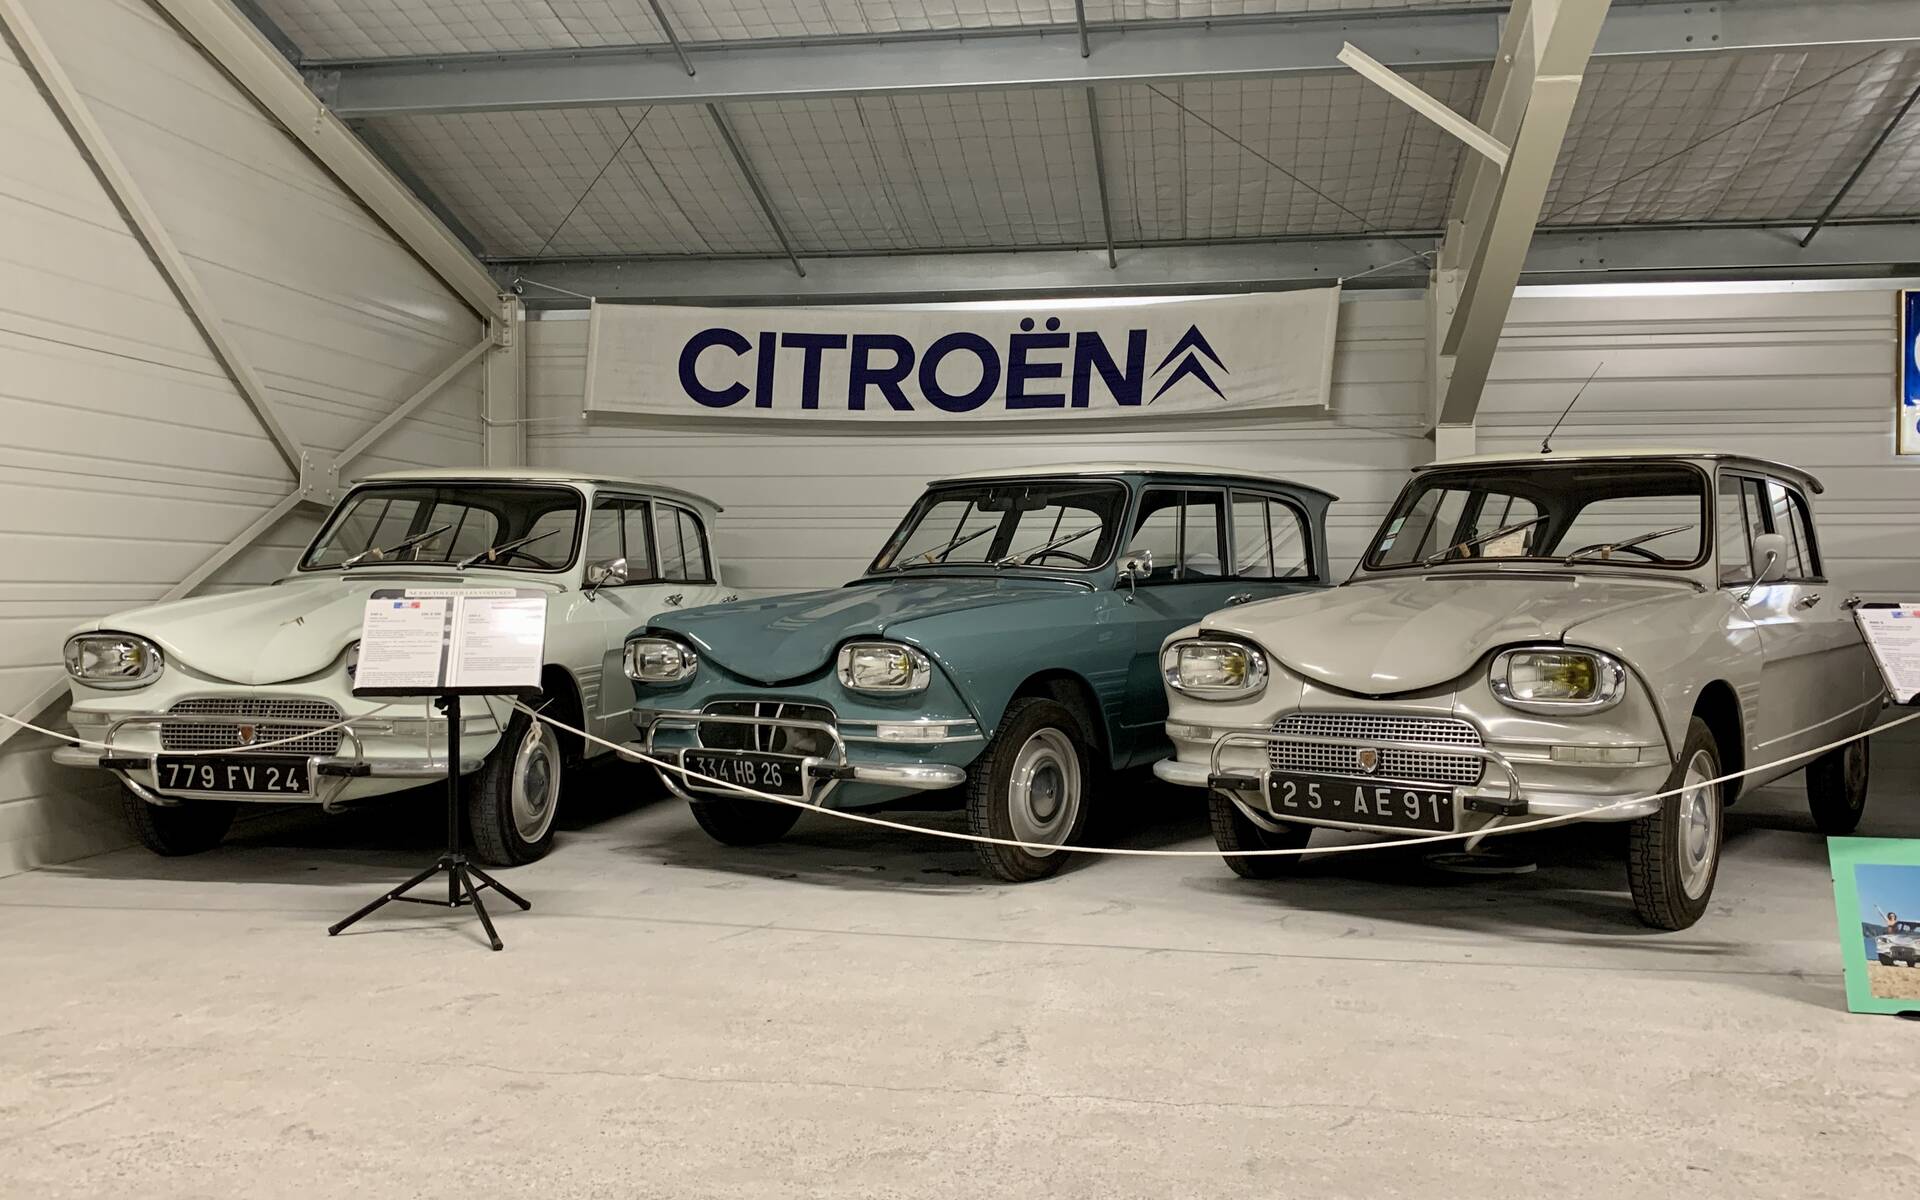 Photos: plus de 100 Citroën d'exception réunies dans un musée en France 543136-photos-plus-de-100-citroen-d-exception-reunies-dans-un-musee-en-france